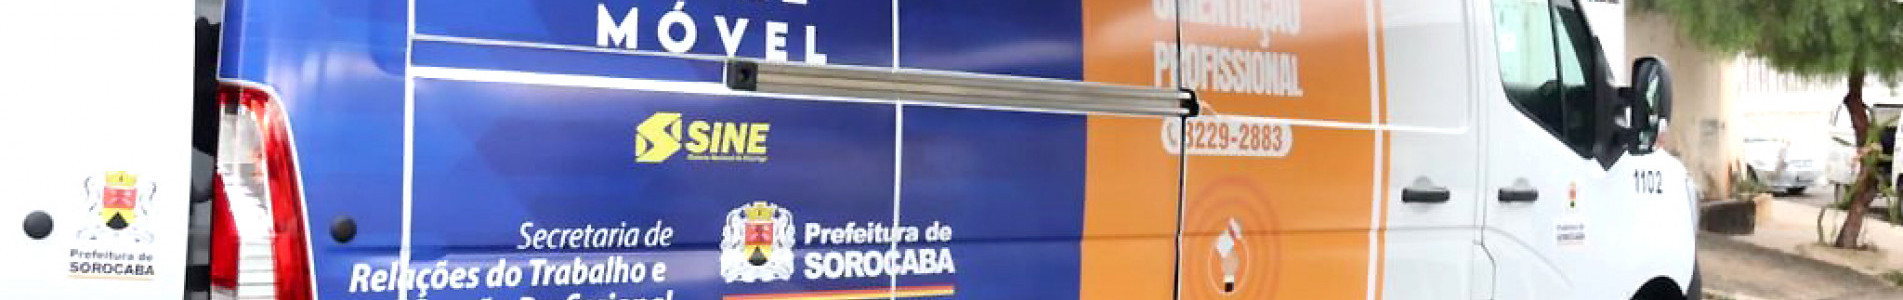 PAT Móvel atende em cinco endereços de Sorocaba na próxima semana